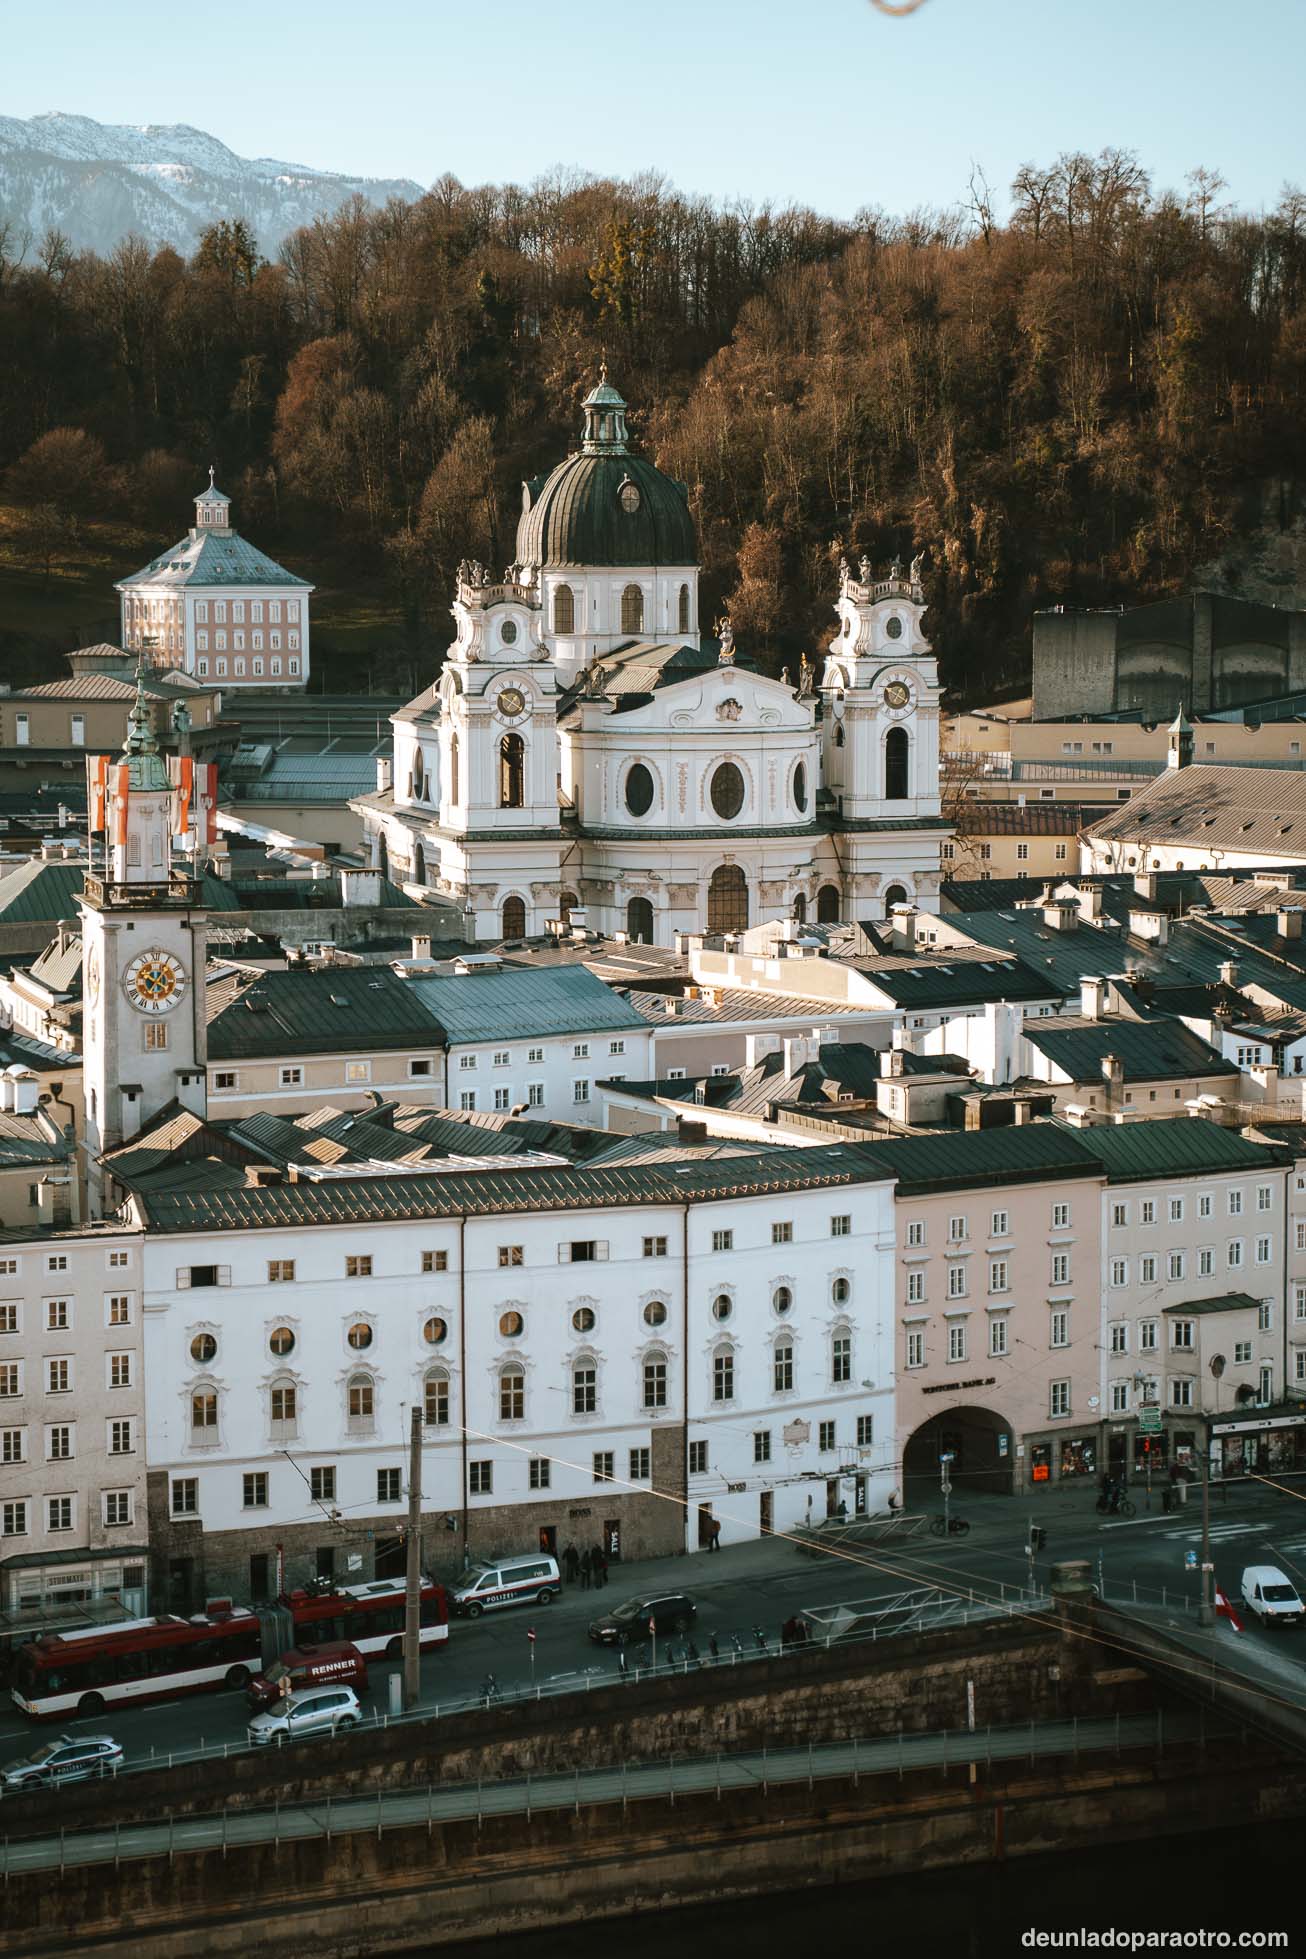 El centro histórico, un lugar imprescindible que ver en Salzburgo en un día, e ideal para pasear tranquilamente